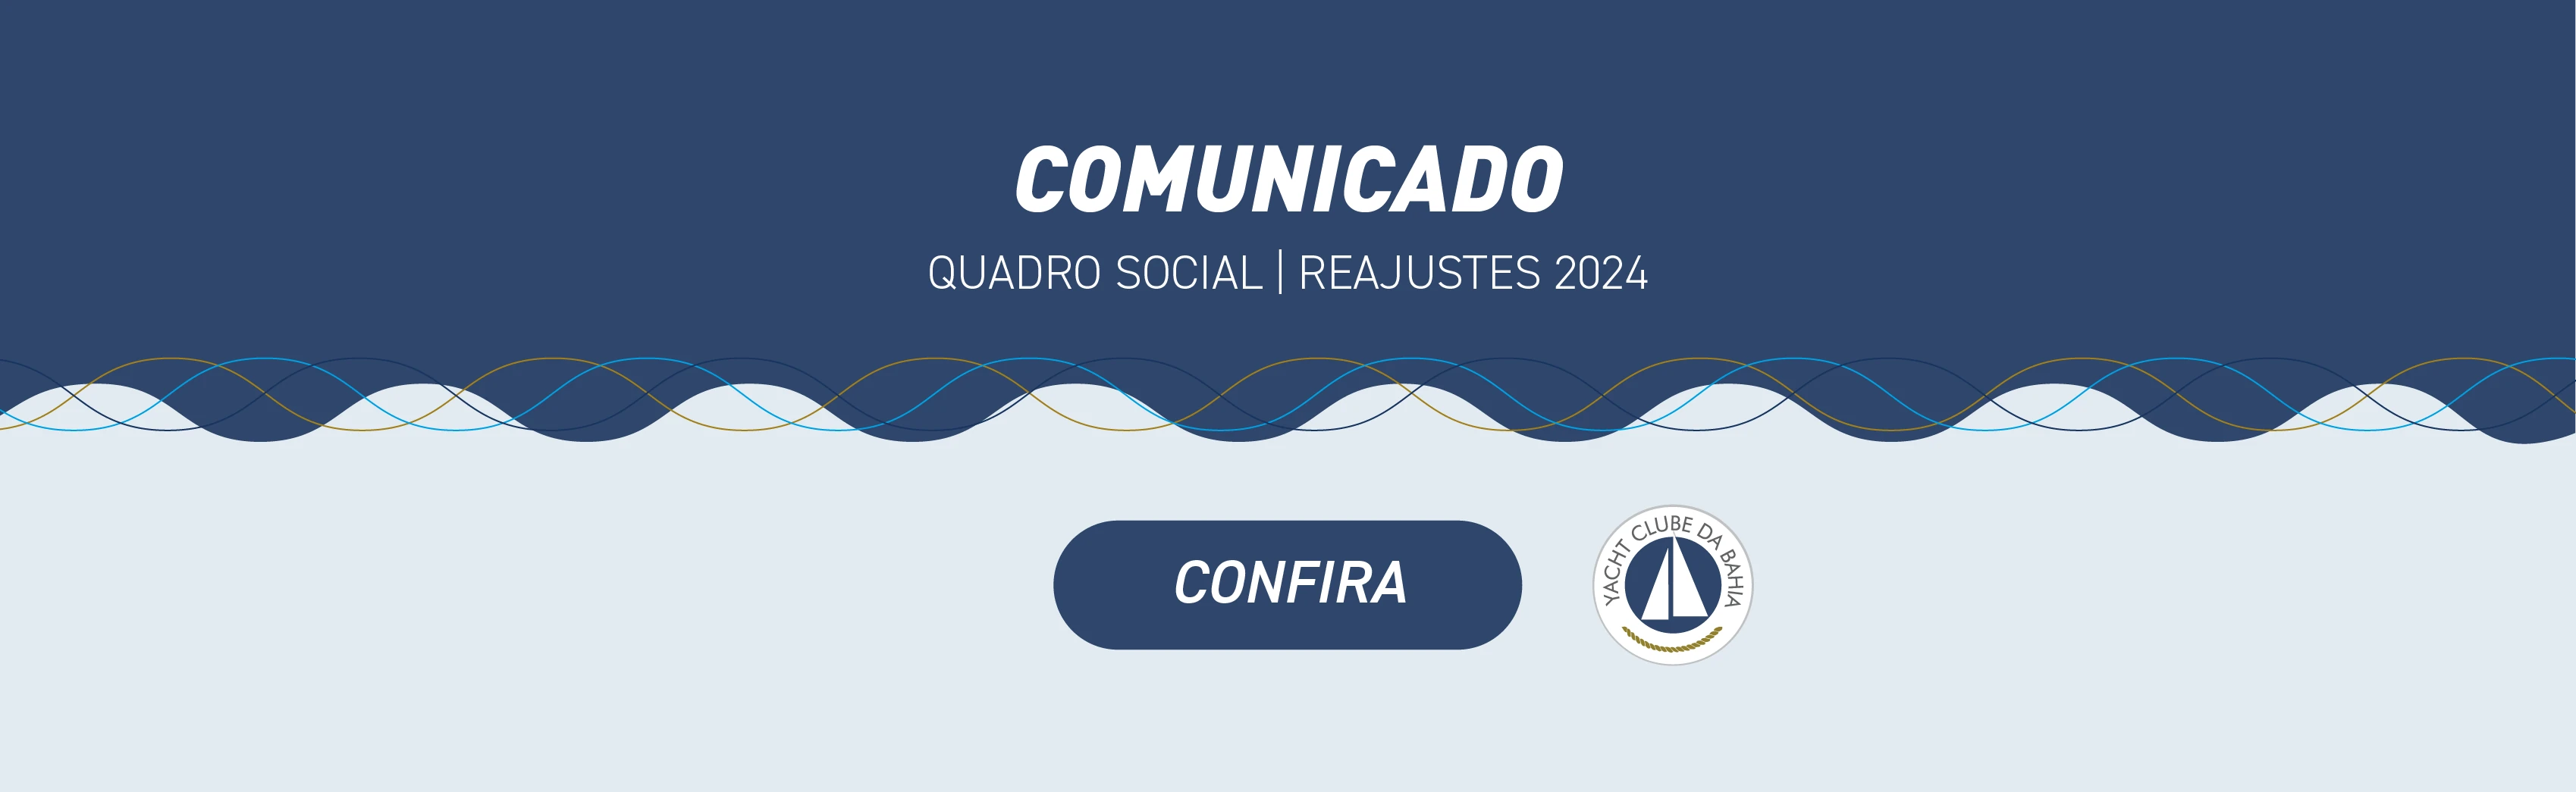 REAJUSTE QUADRO SOCIAL 2024